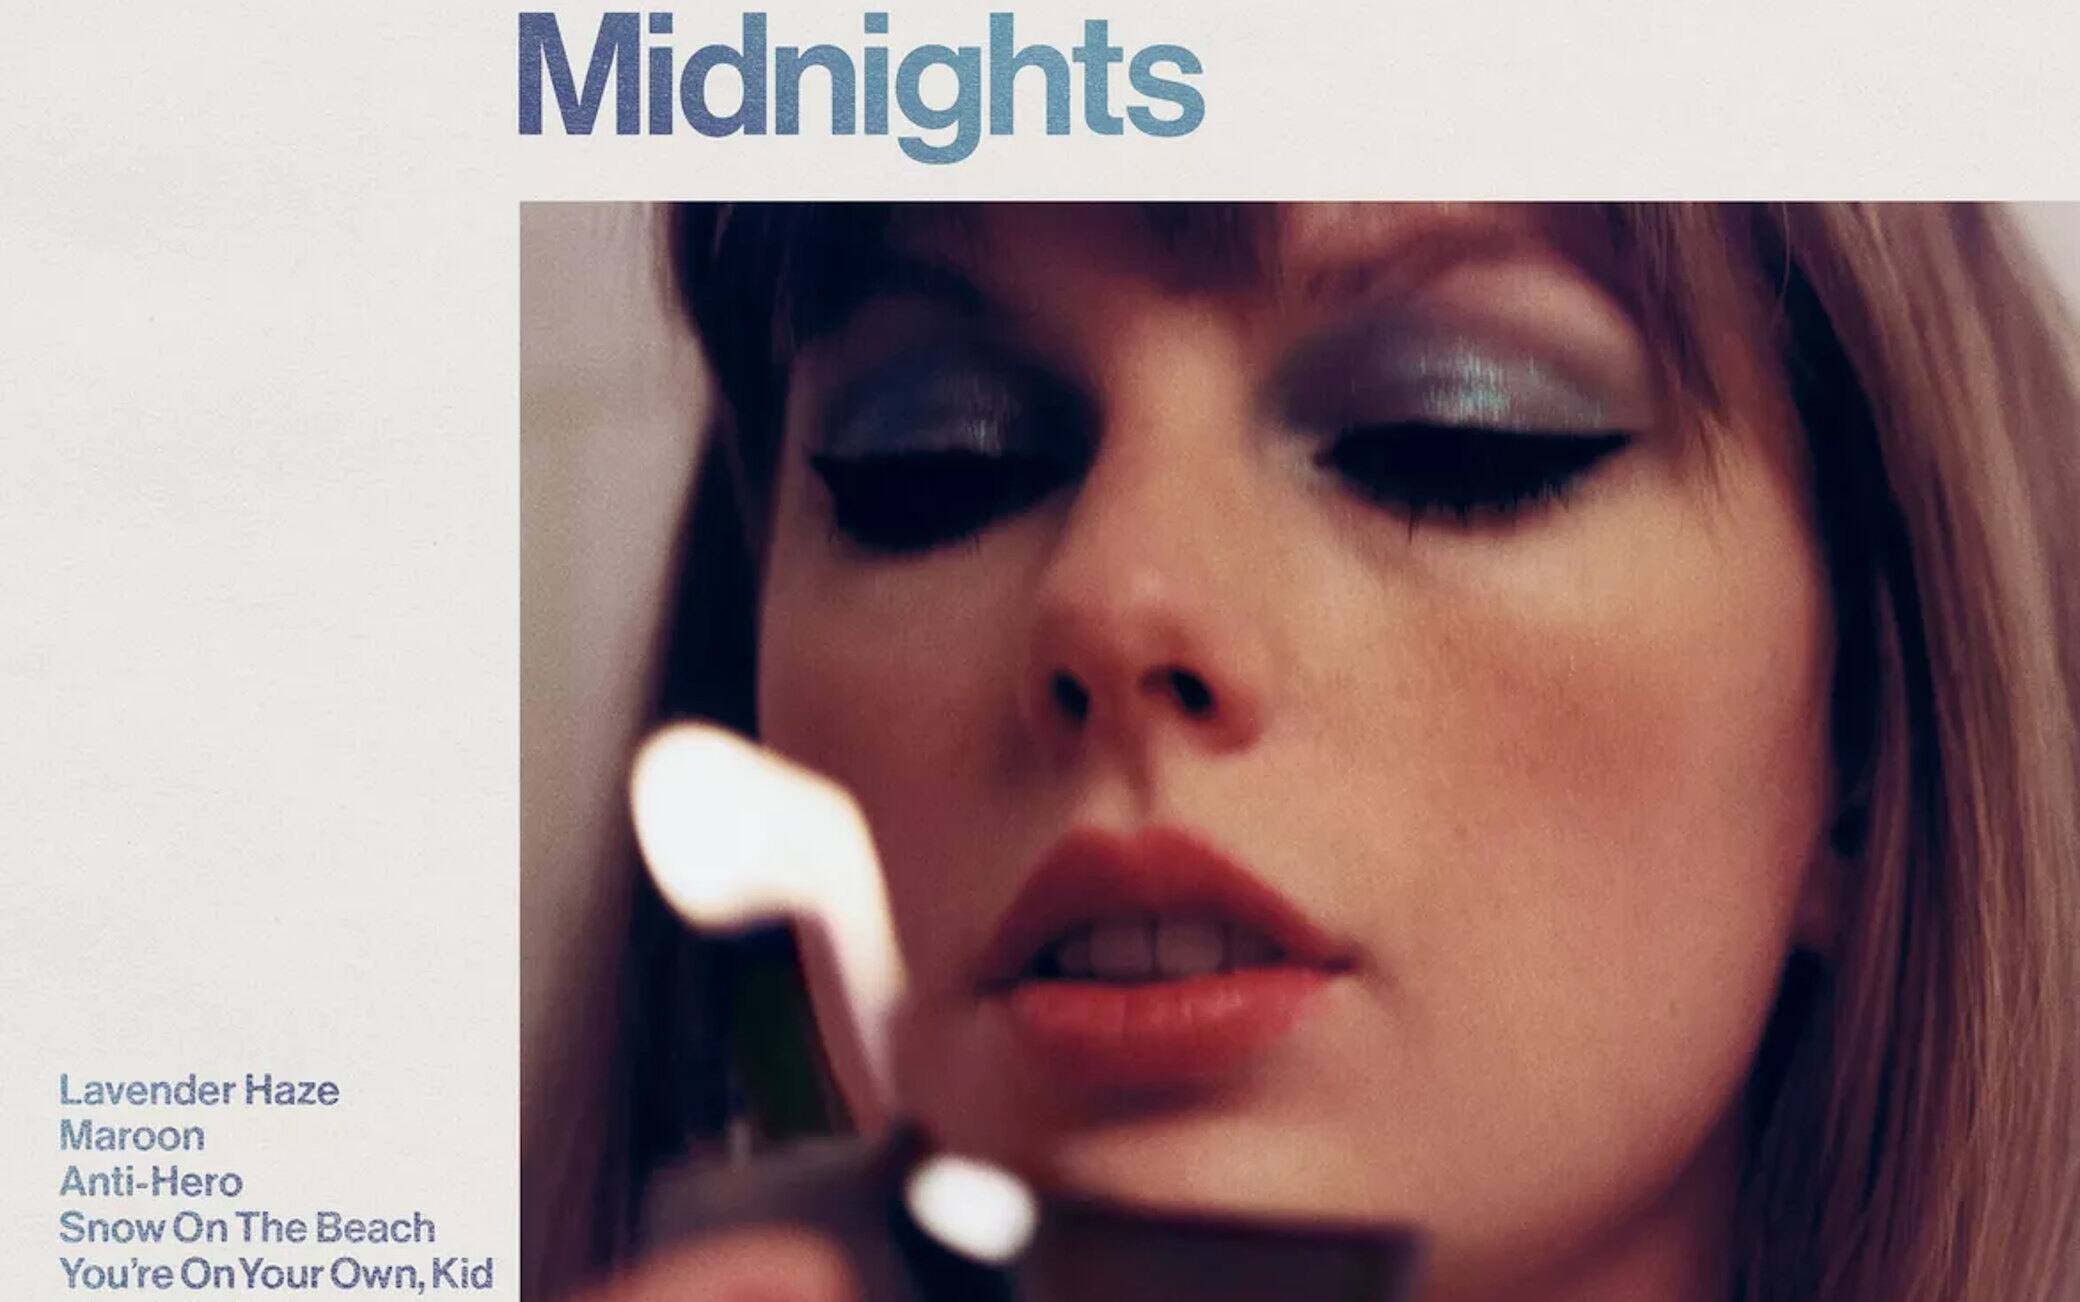 Midnights' di Taylor Swift è diventato l'album più ascoltato in un singolo  giorno nella storia di Spotify